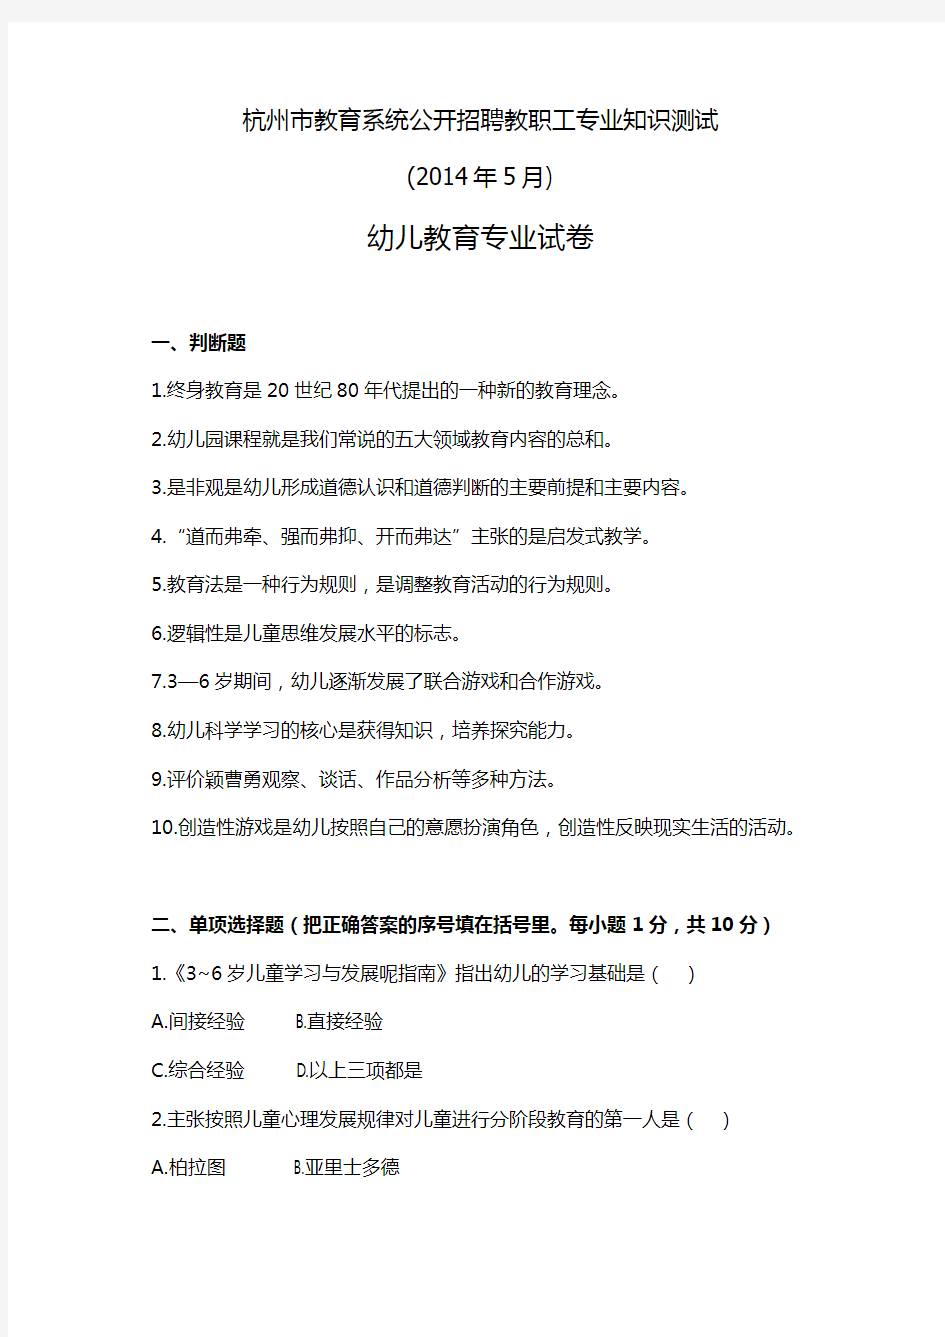 杭州市教育系统公开招聘教职工专业知识测试(2014年5月)幼儿教育专业试卷